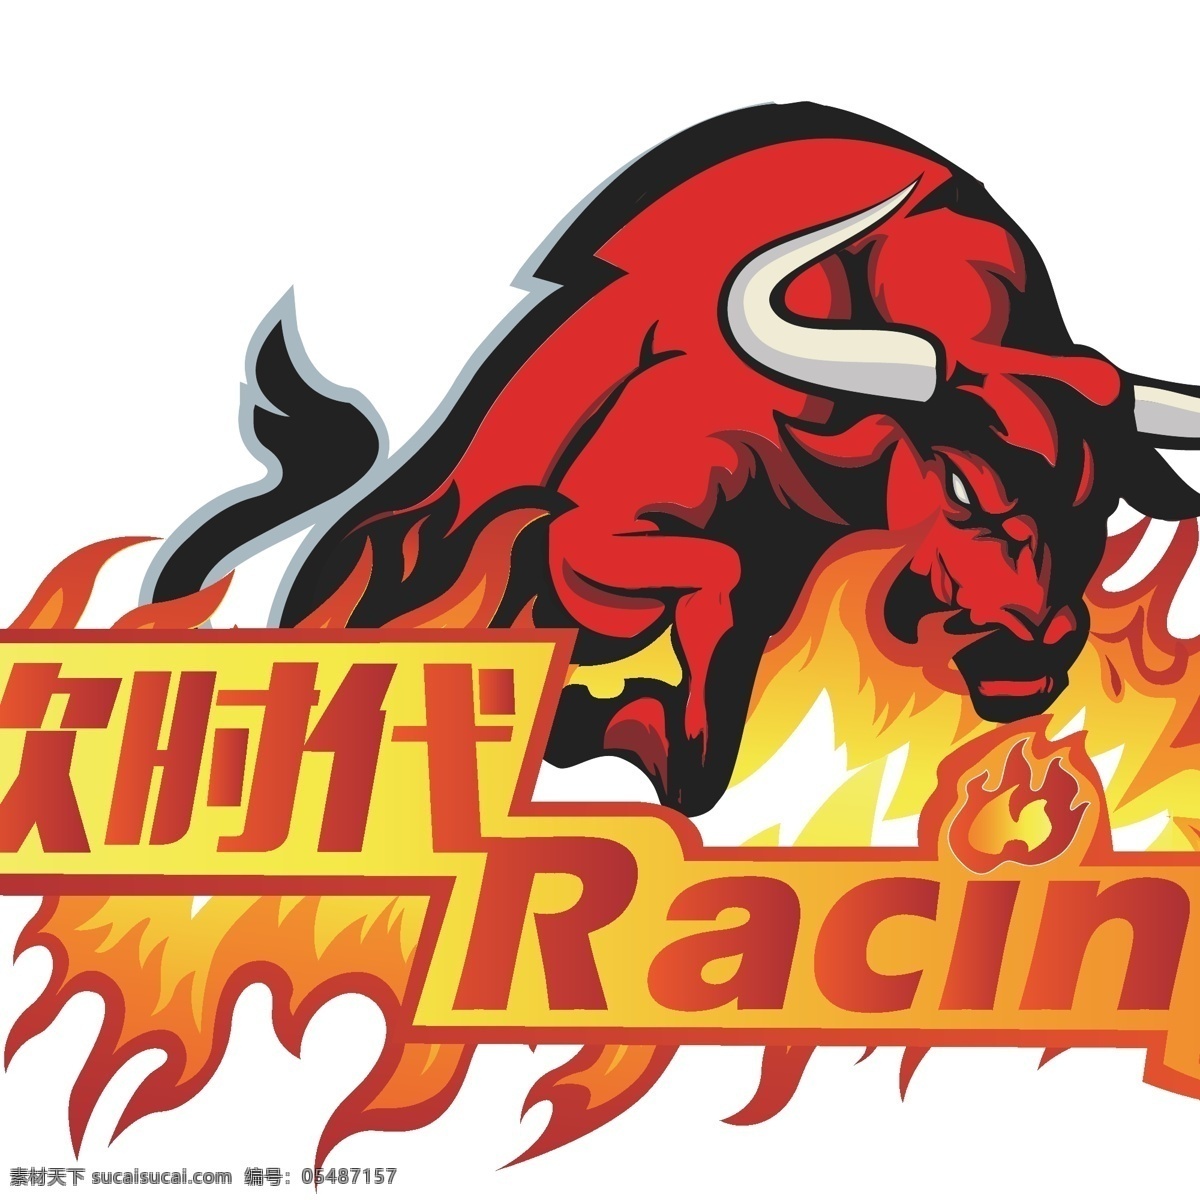 次 时代 红牛 racing 火牛 次时代 奔牛 公牛 标志图标 企业 logo 标志